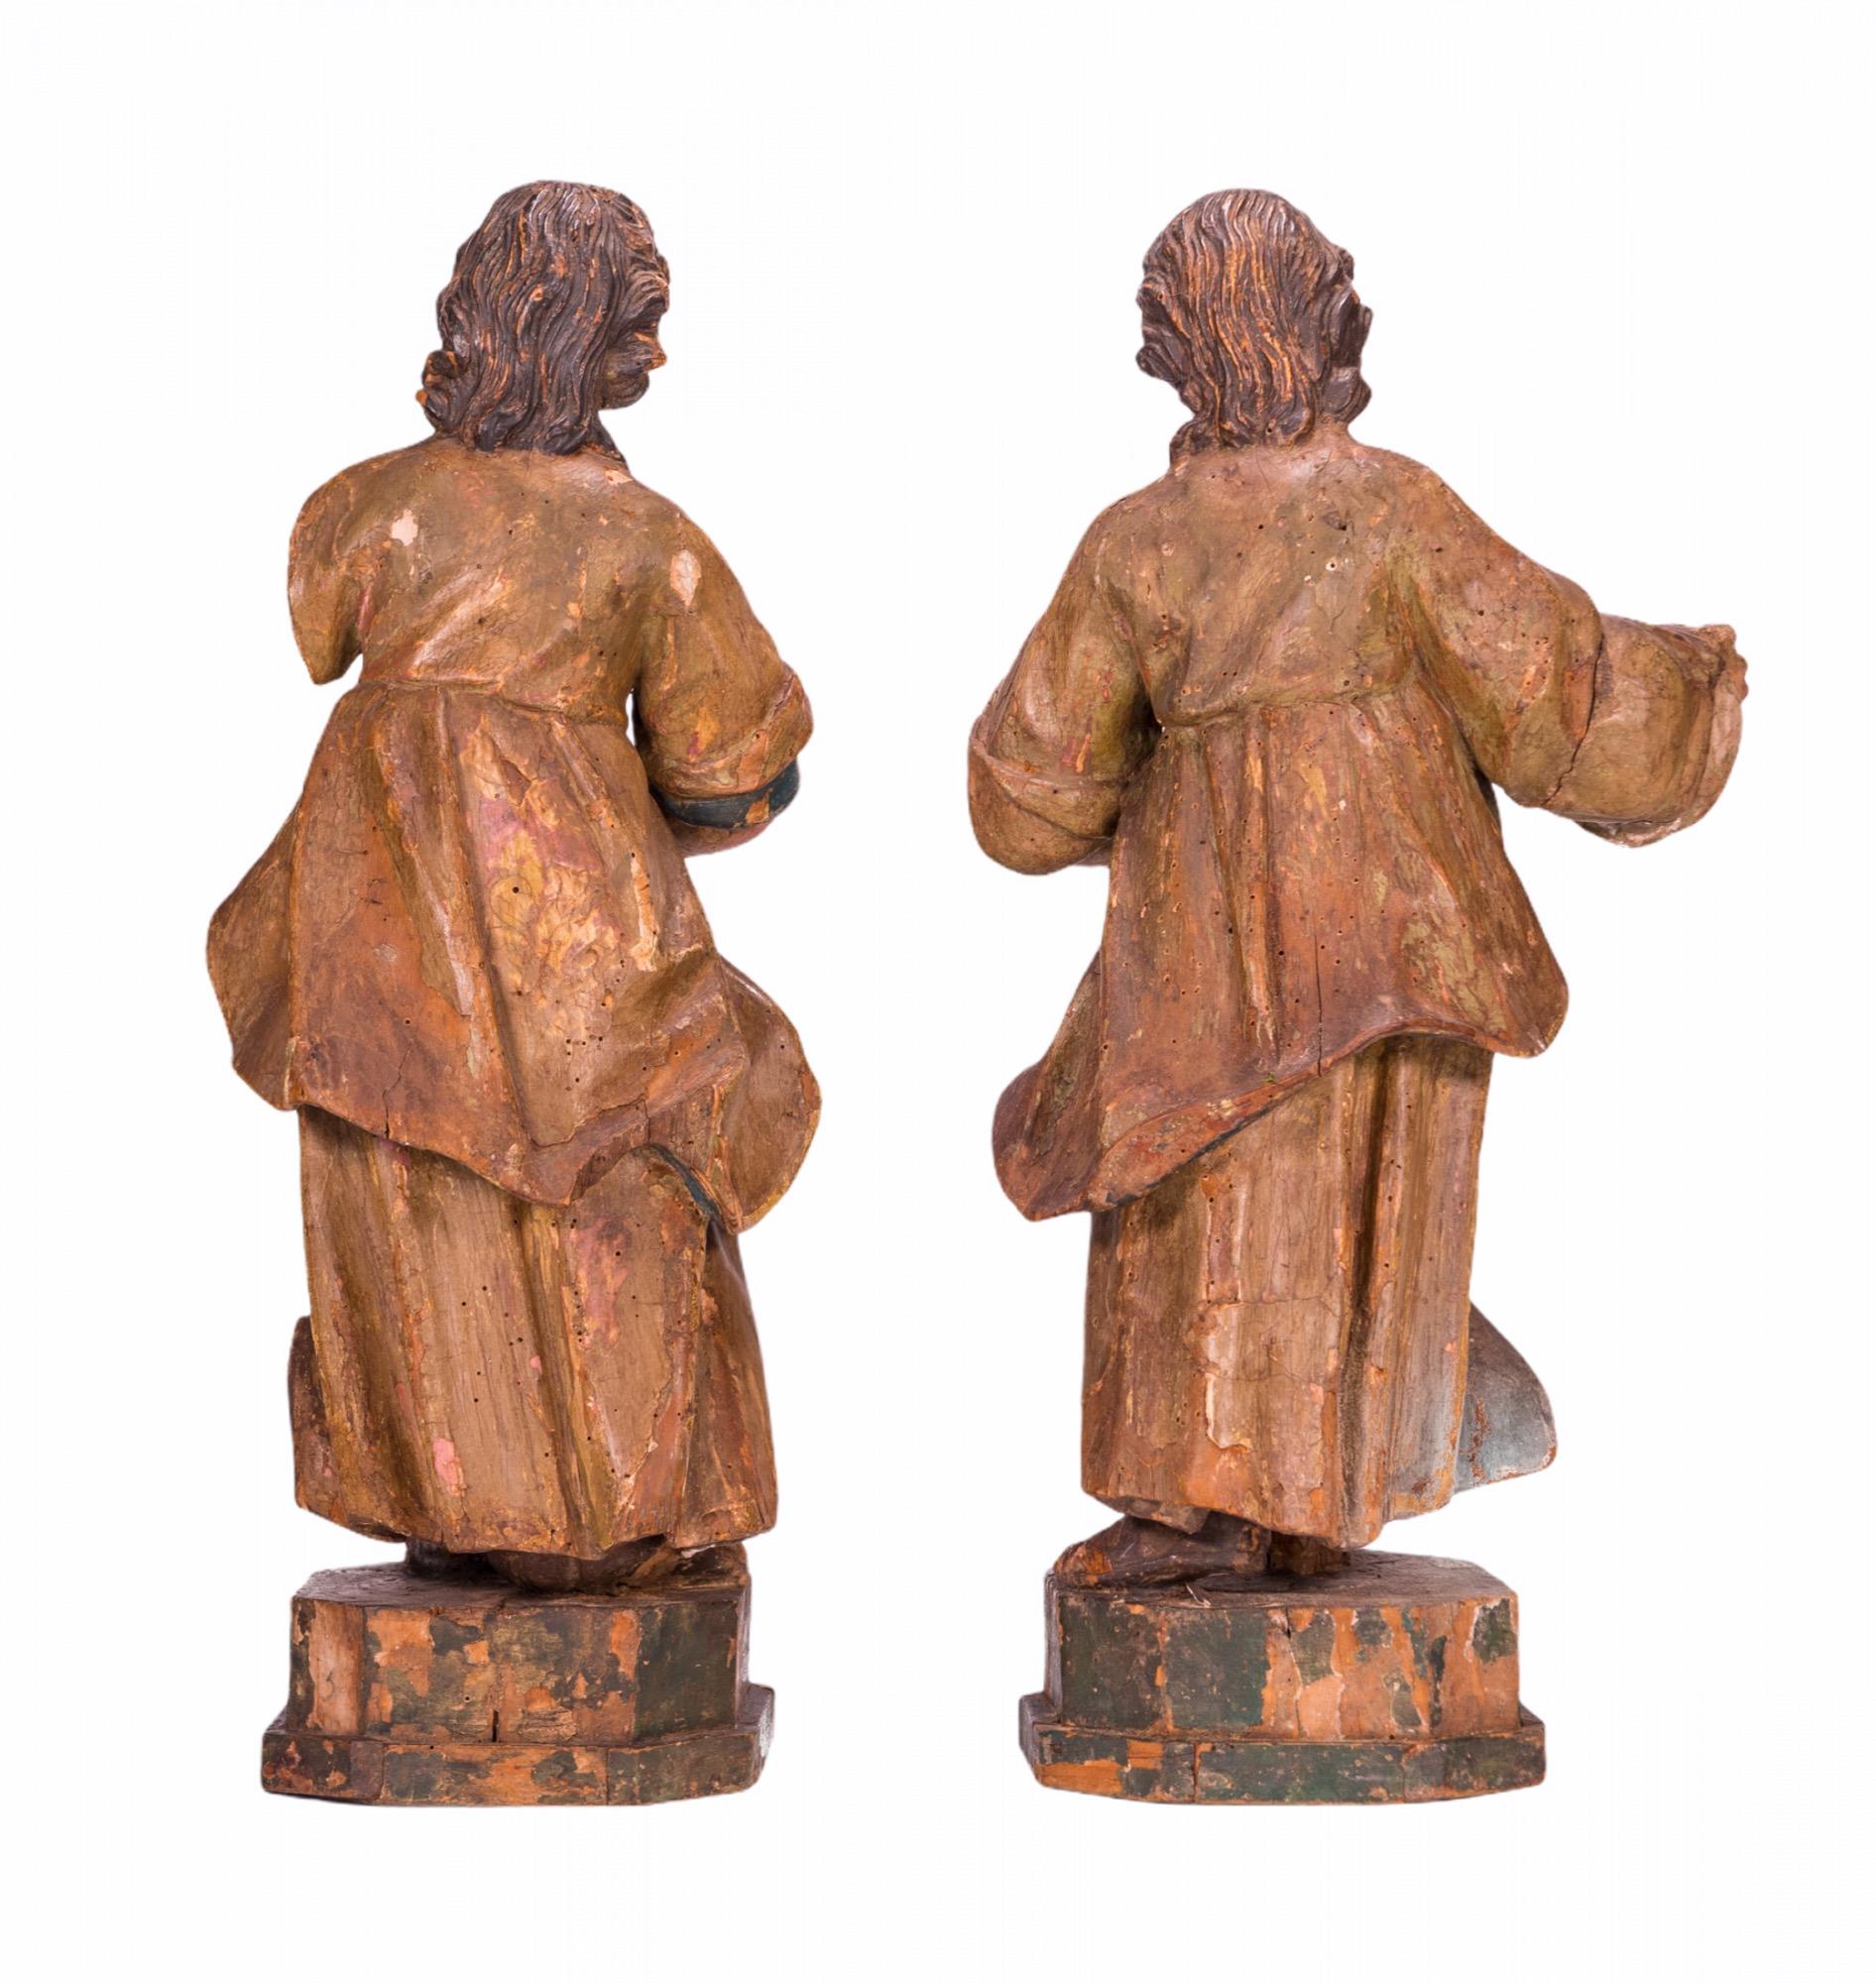 Angelische geschnitzte Holzskulpturen, 16. Jahrhundert (Italienisch)